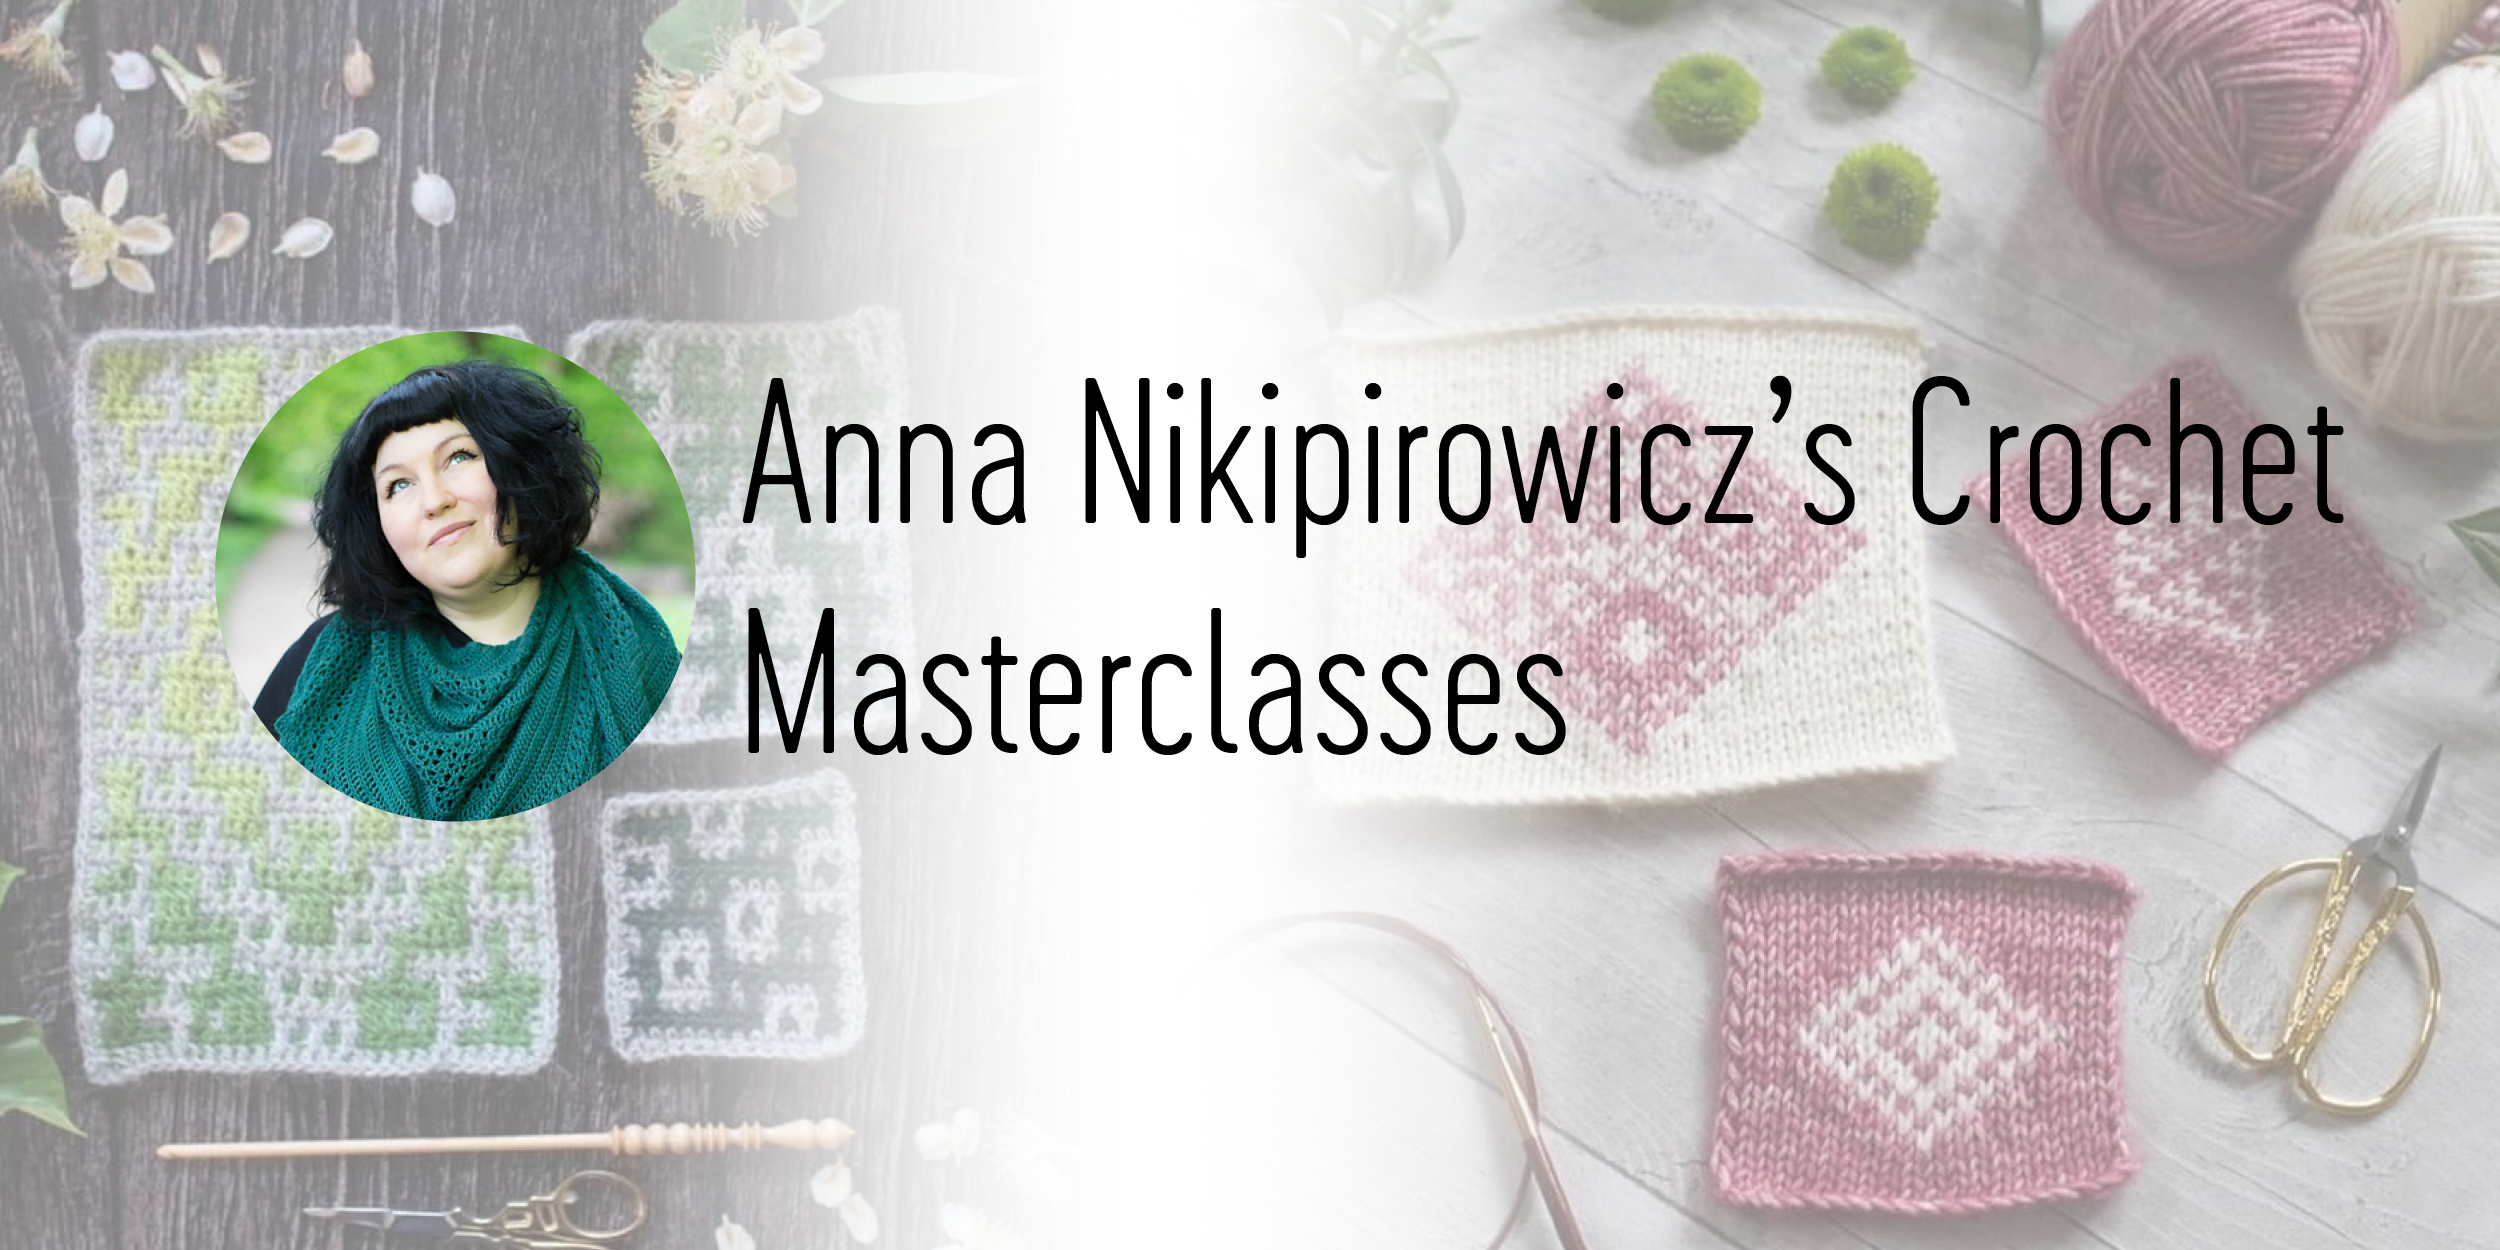 Anna Nikipirowicz's Crochet Masterclasses at The Yarn Dispensary